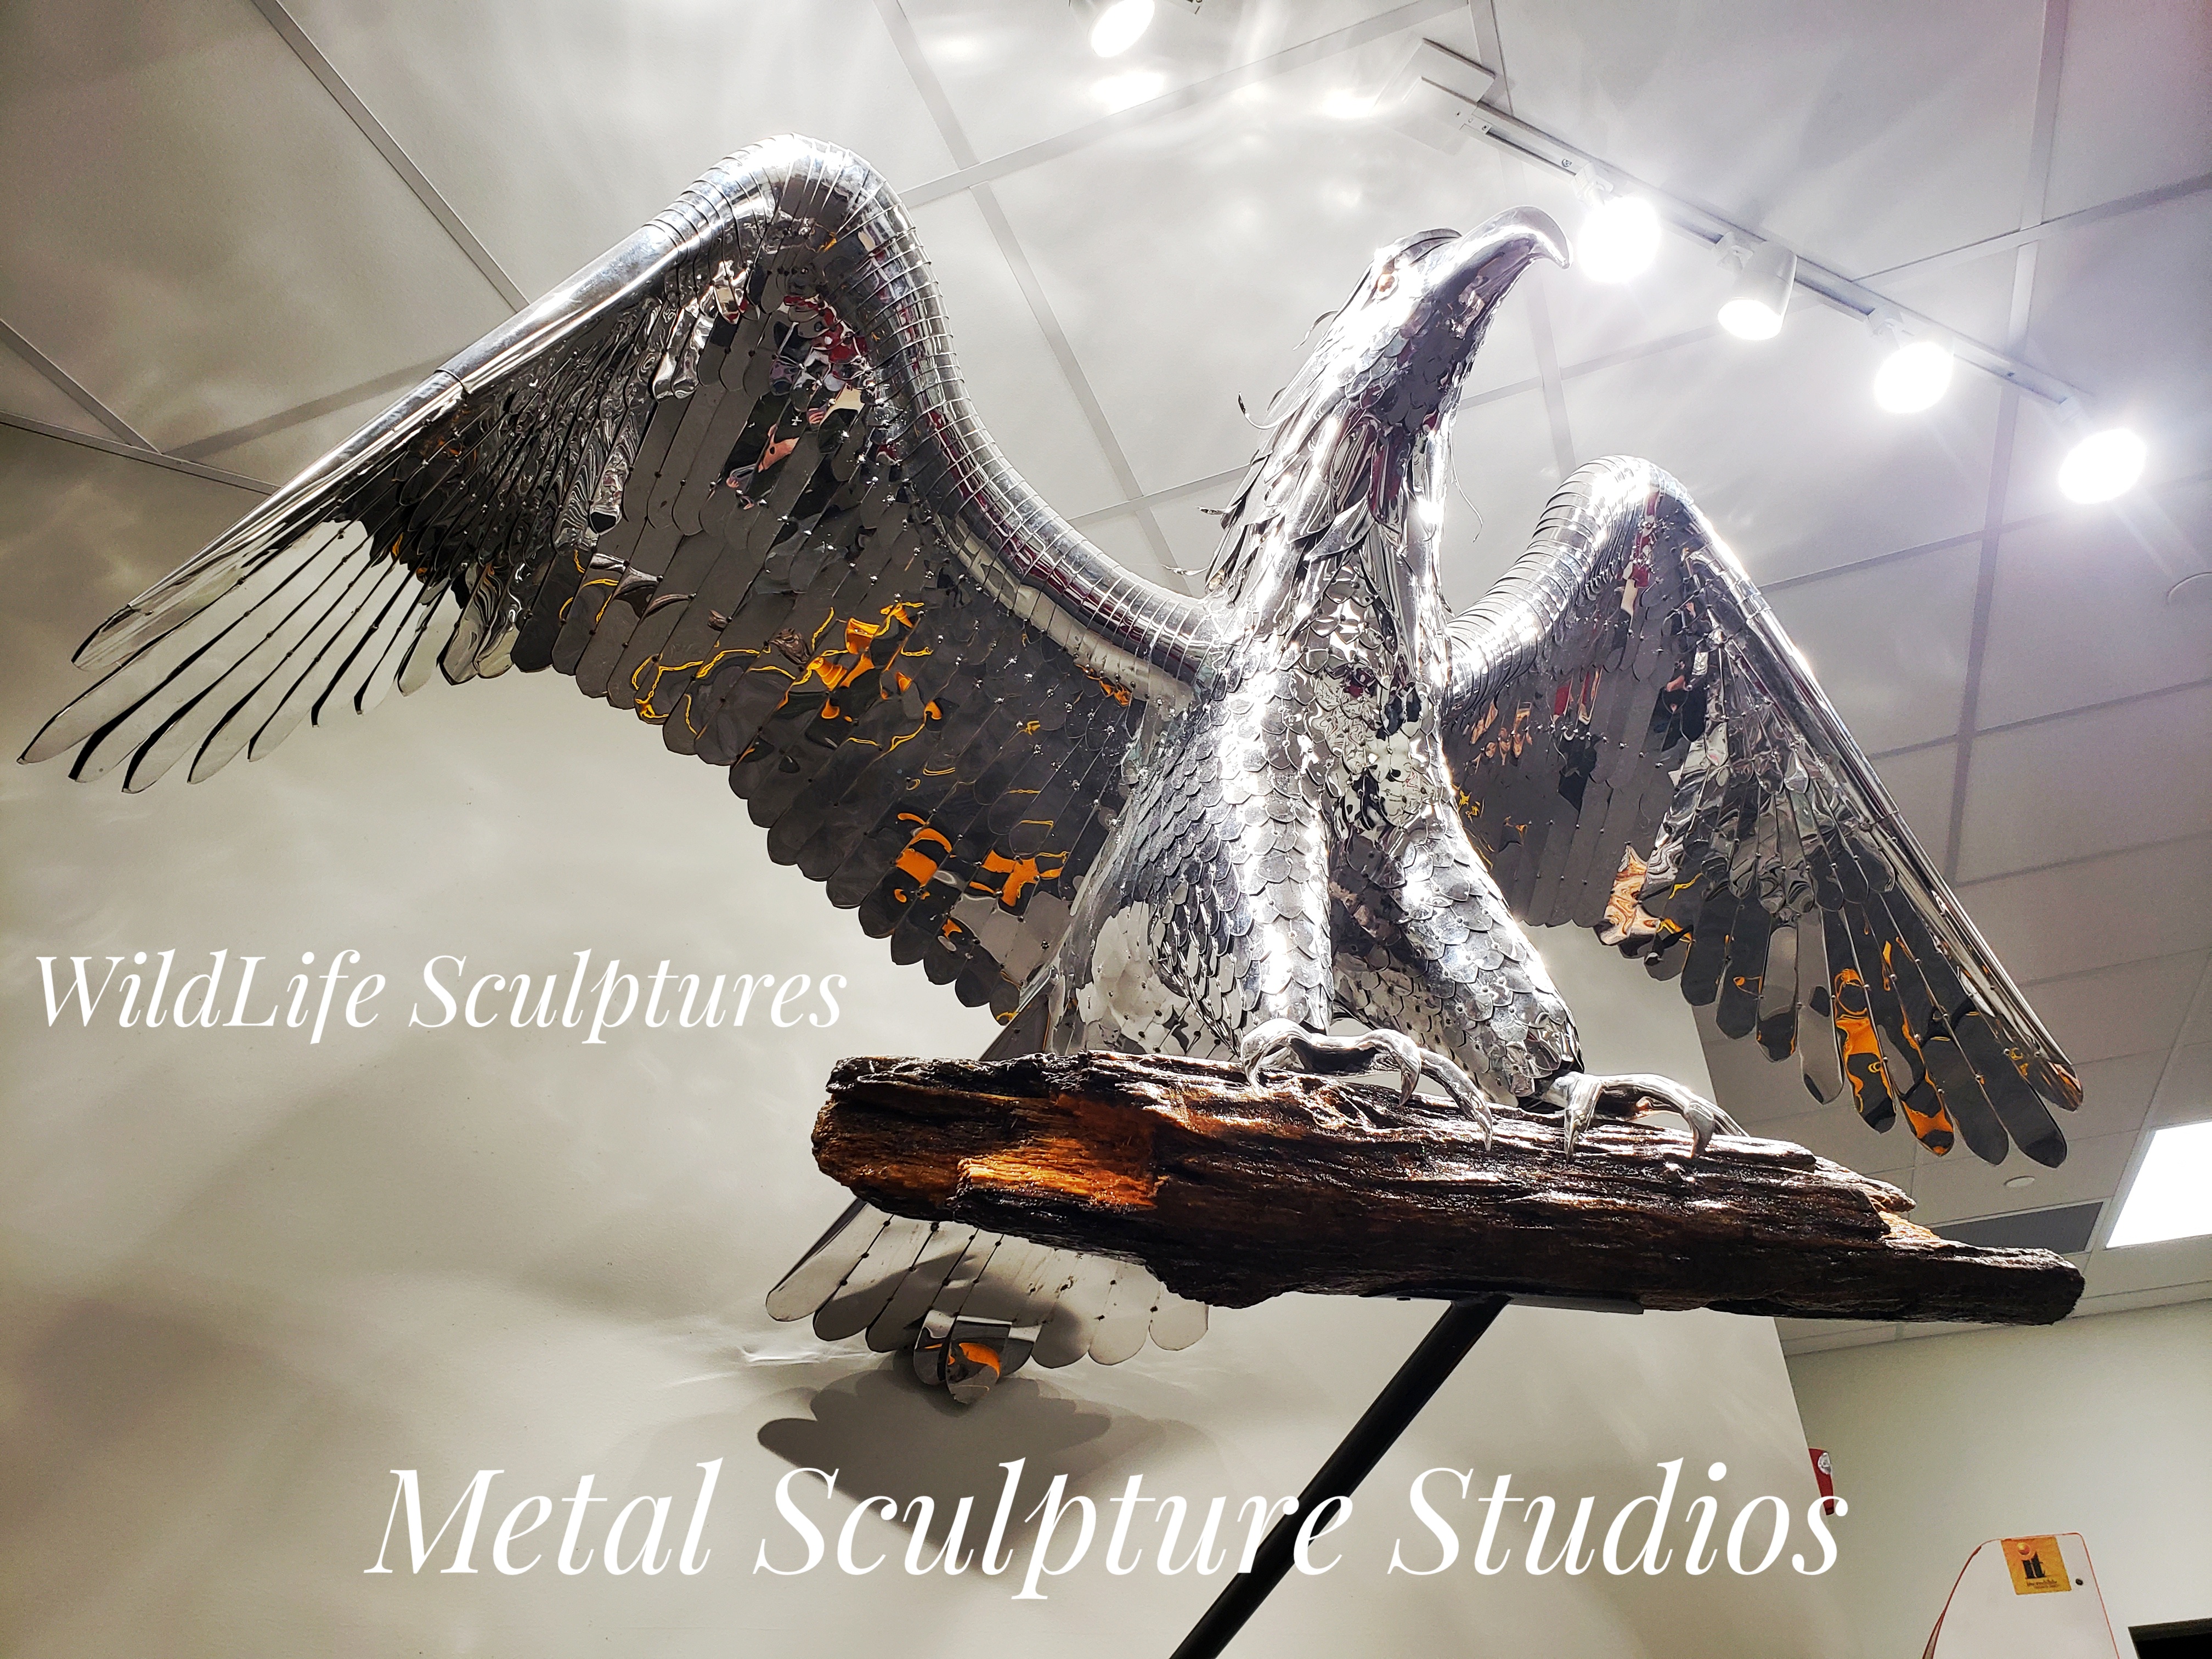 Wildlife-Sculptures-Metal-Sculpture-Studios